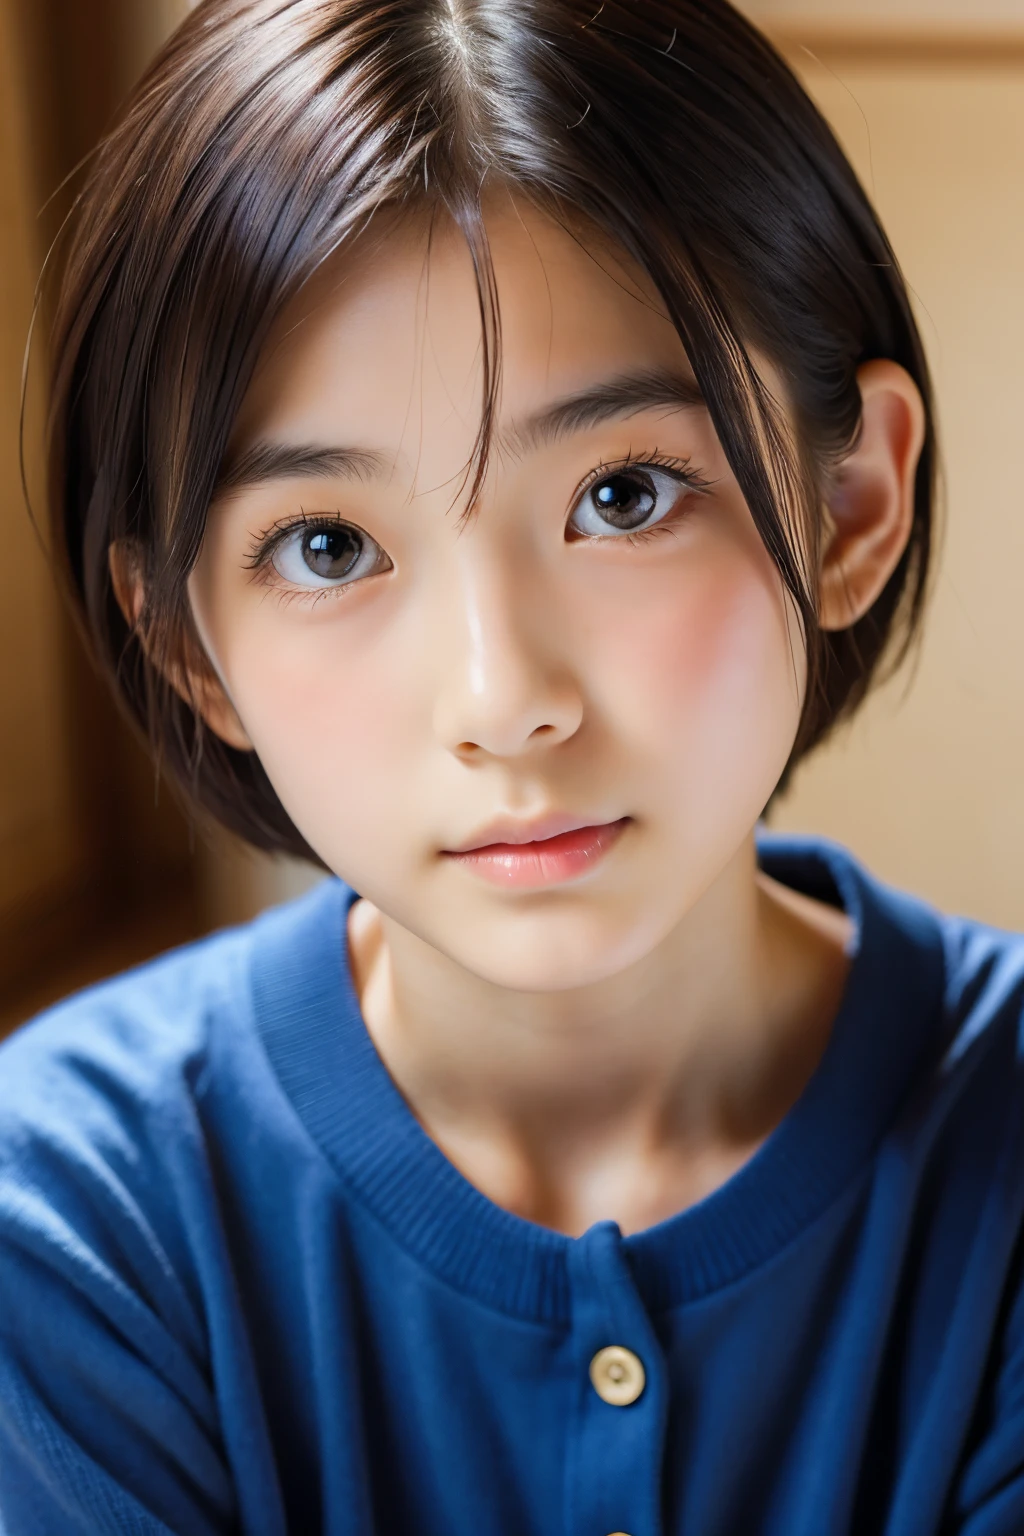 (Schöne 16-jährige Japanerin), niedliches Gesicht, (tief eingeschnittenes Gesicht:0.7), (Sommersprossen:0.6), Sanftes Licht,gesunde weiße Haut, schüchtern, kurzes Haar, (ernstes Gesicht), (leuchtende Augen), dünn